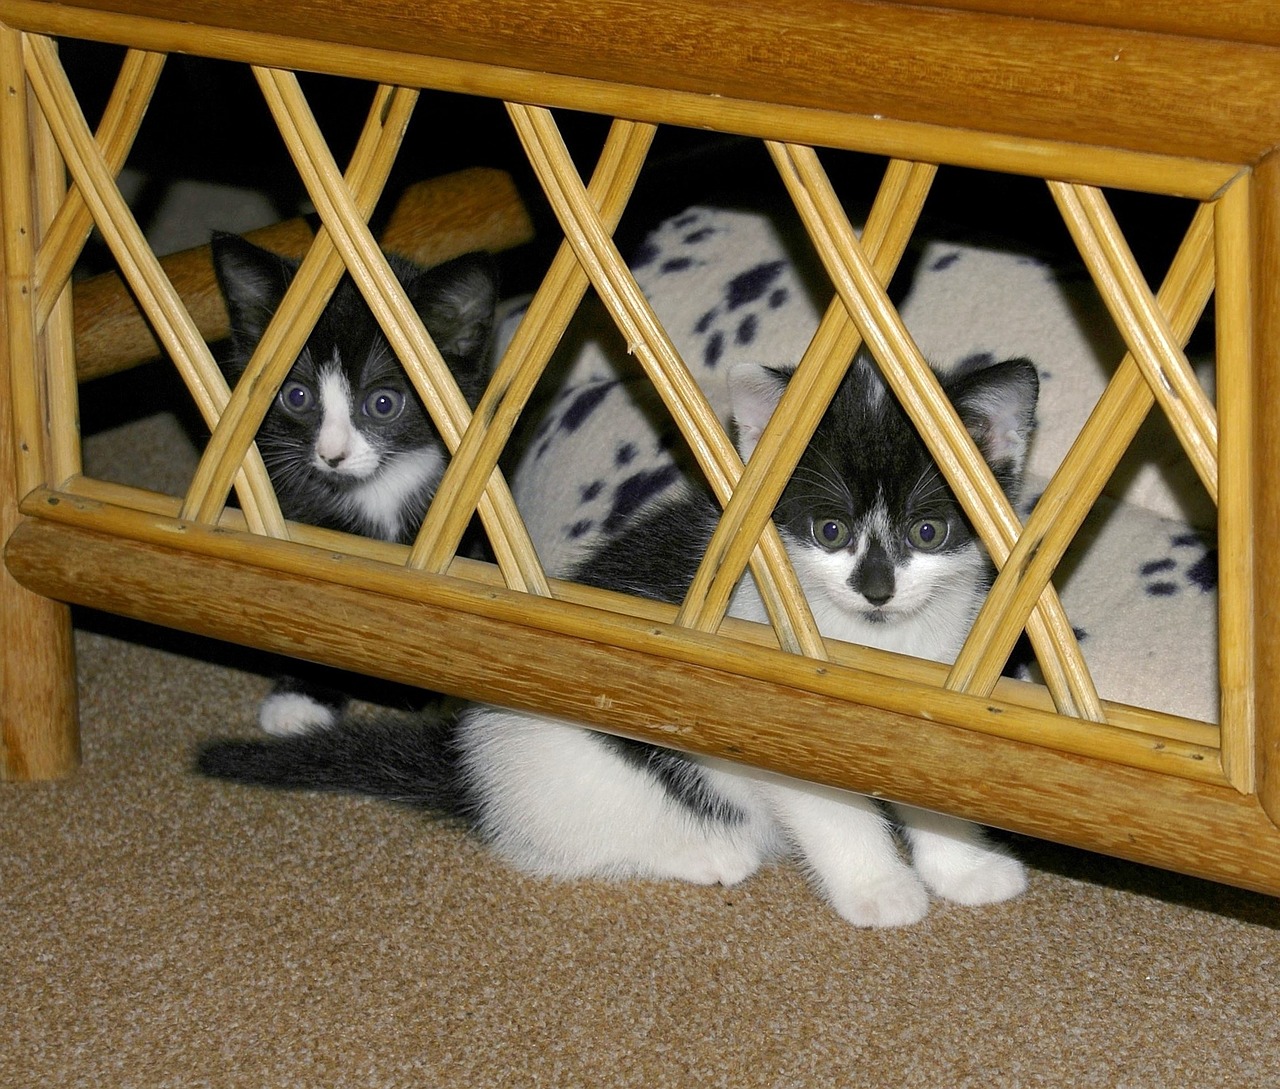 cat kittens hidden free photo